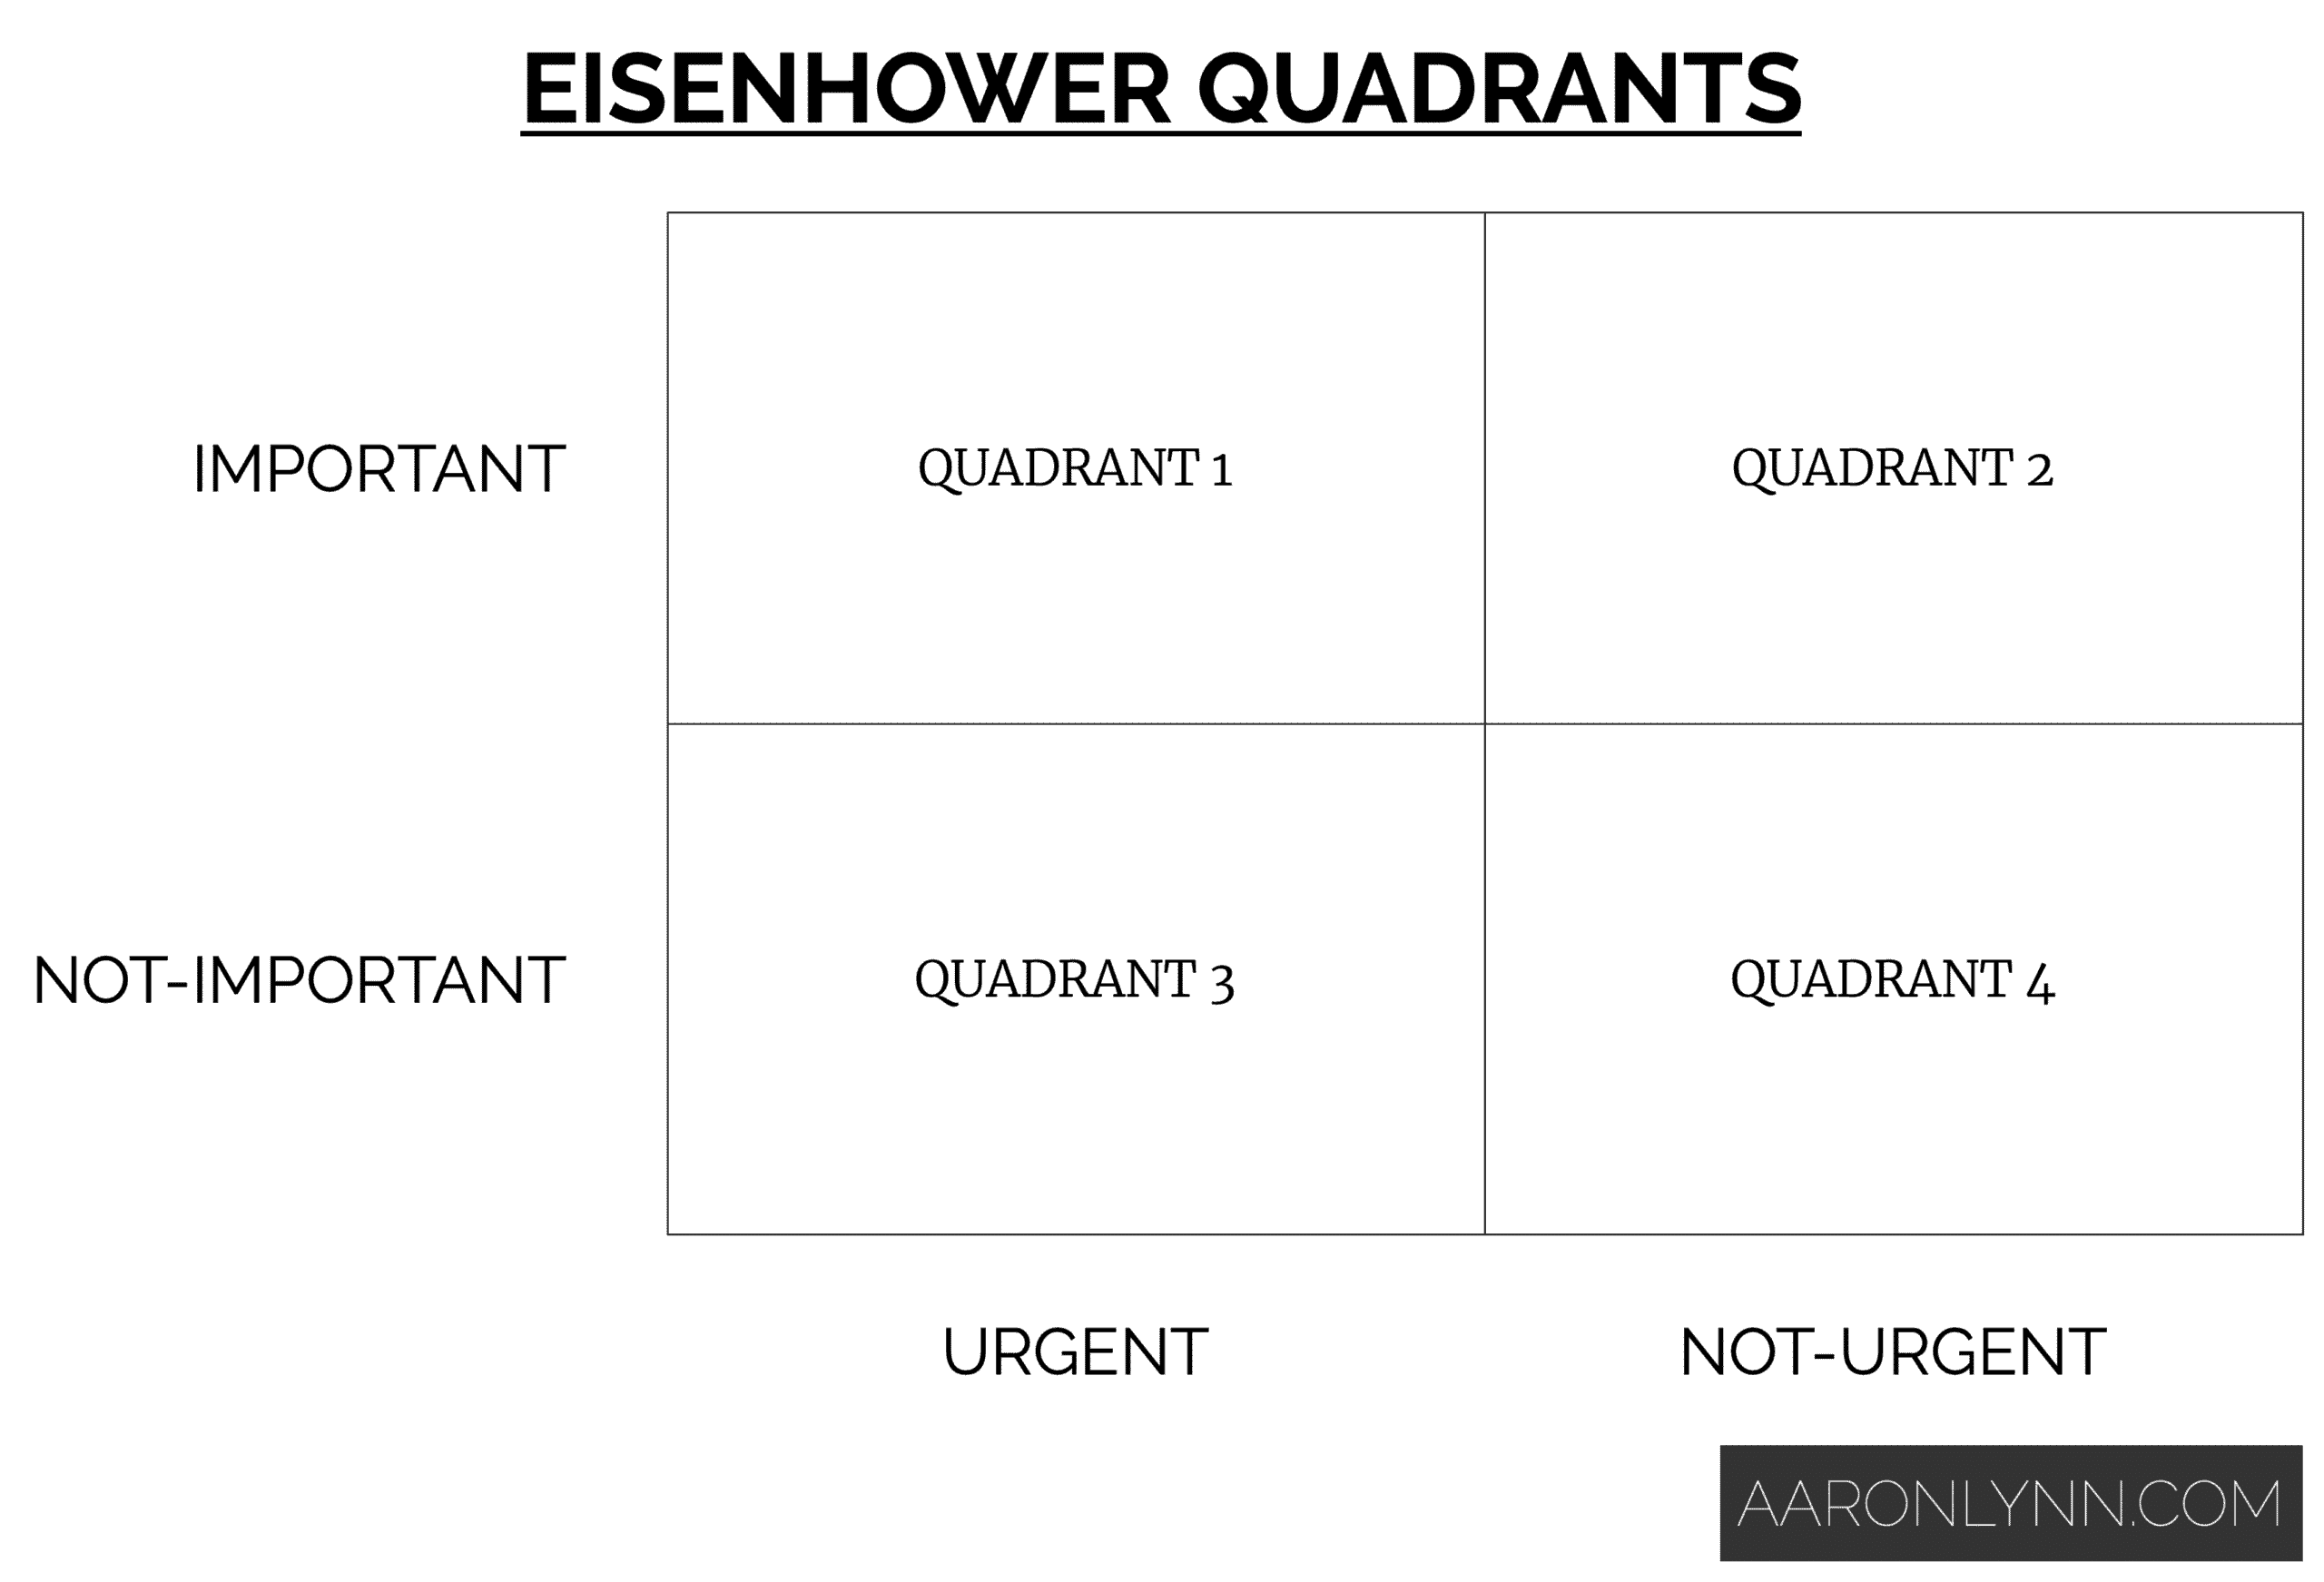 Eisenhower Quadrants and Matrix